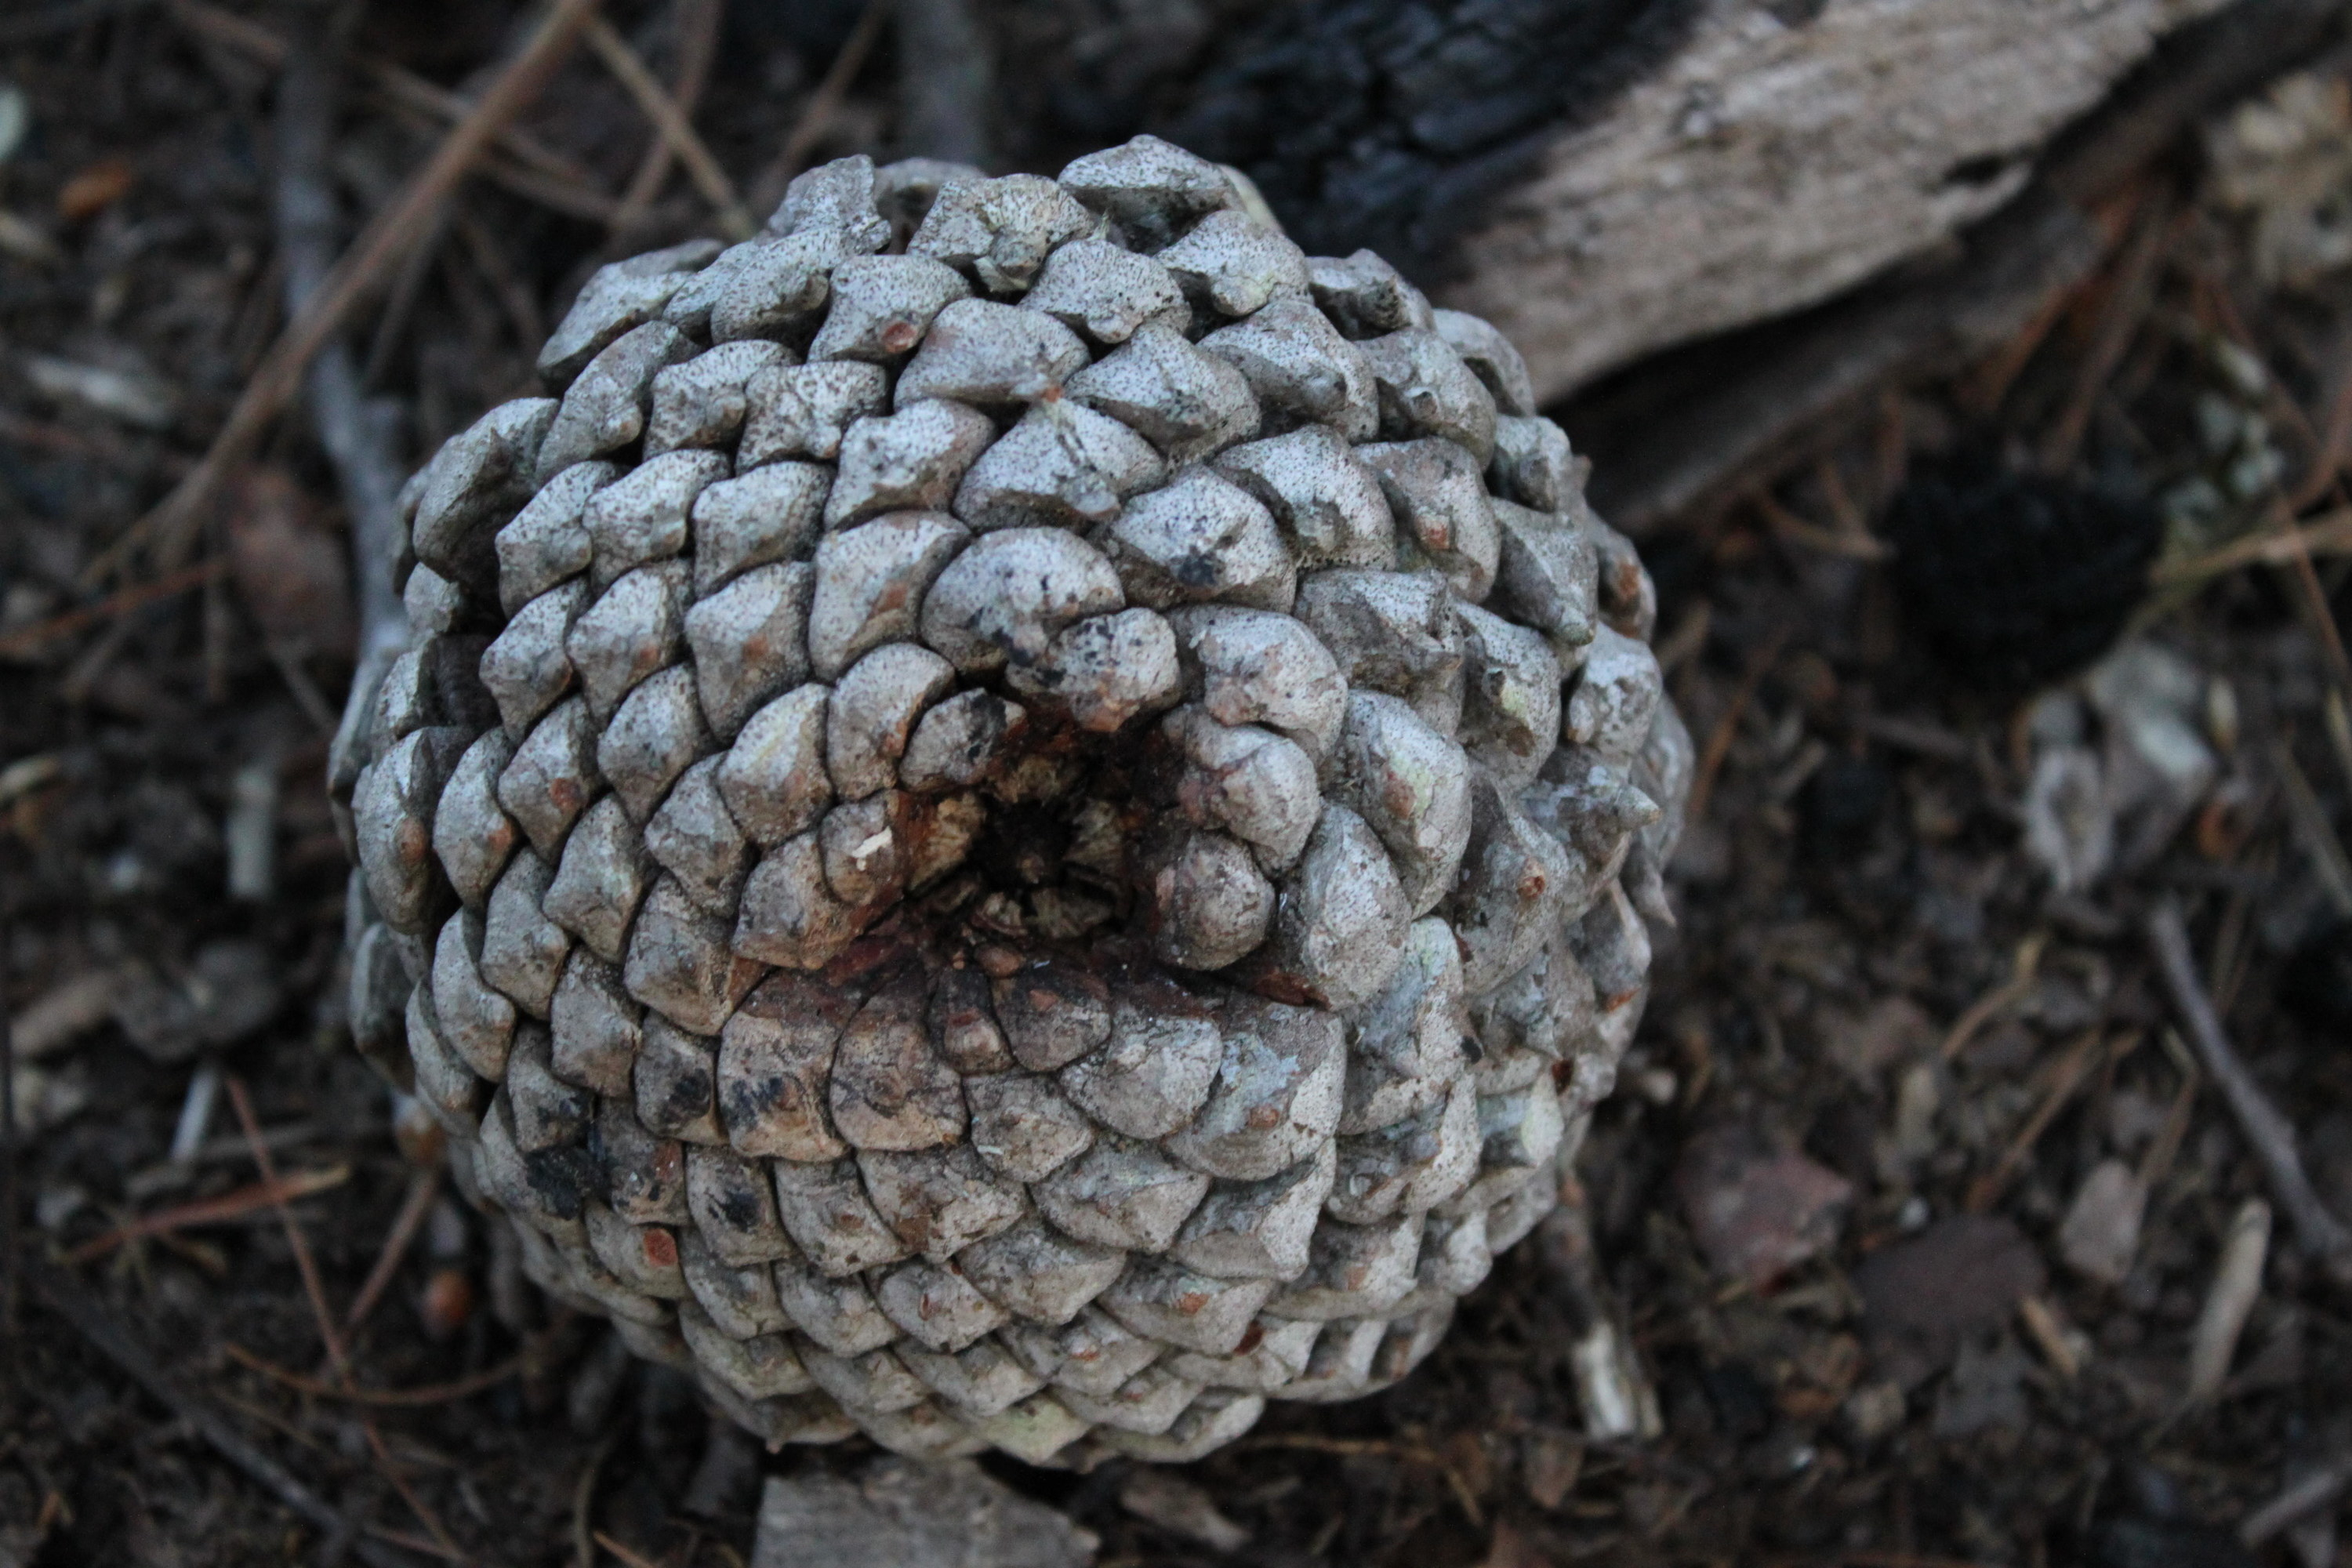 Closeup of a pine cone